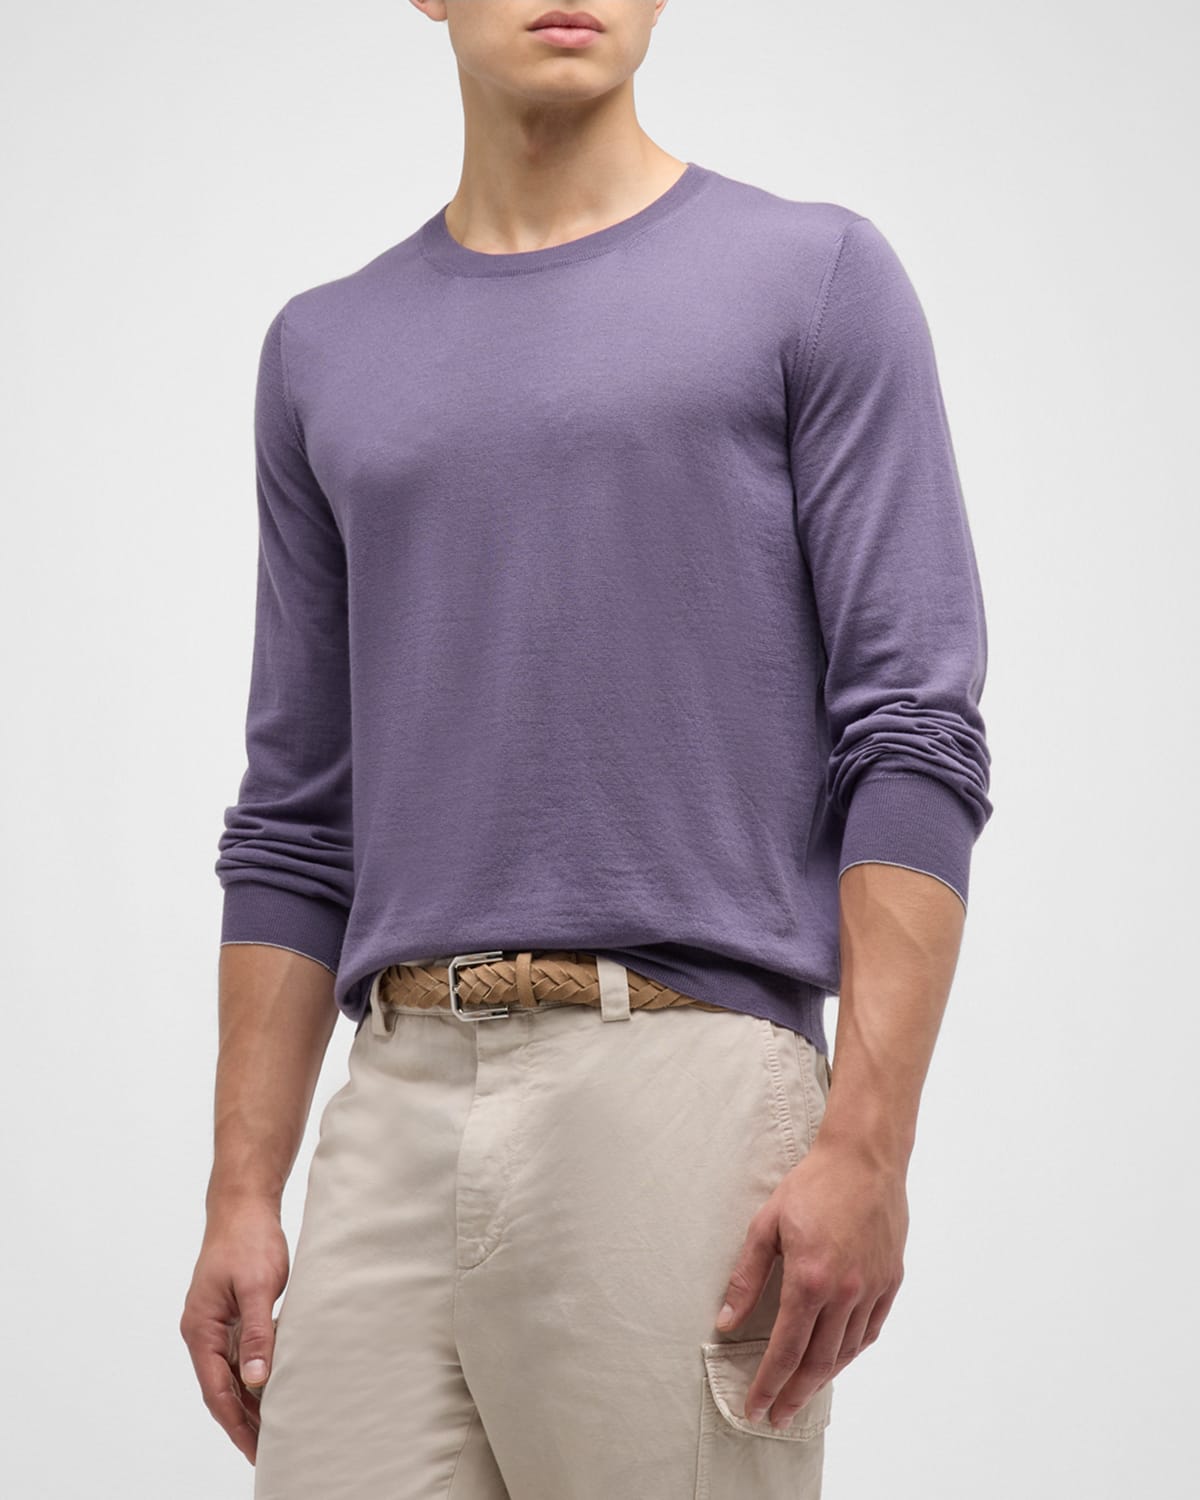 Men's Fine Gauge Crewneck Sweater